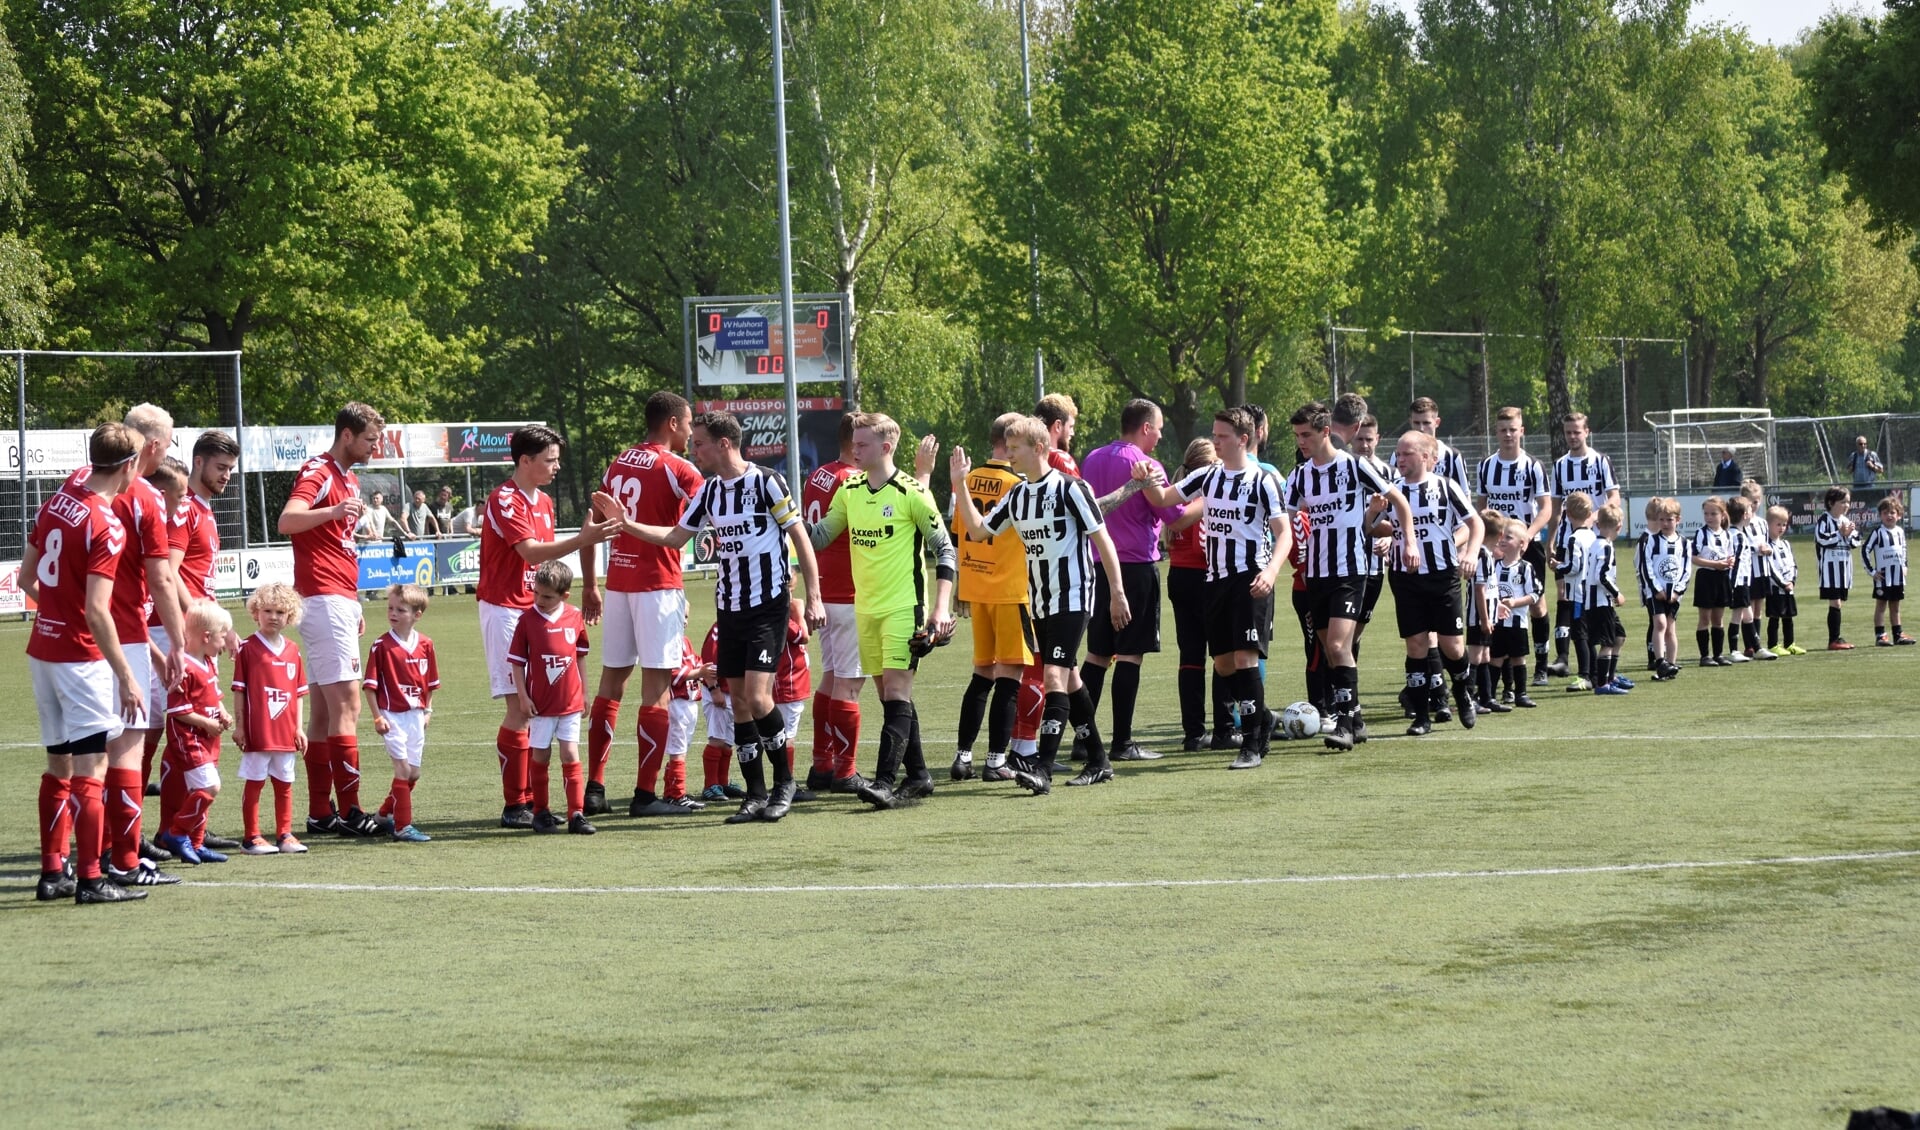  De teams van Hulshorst en Elspeet, vorig seizoen  